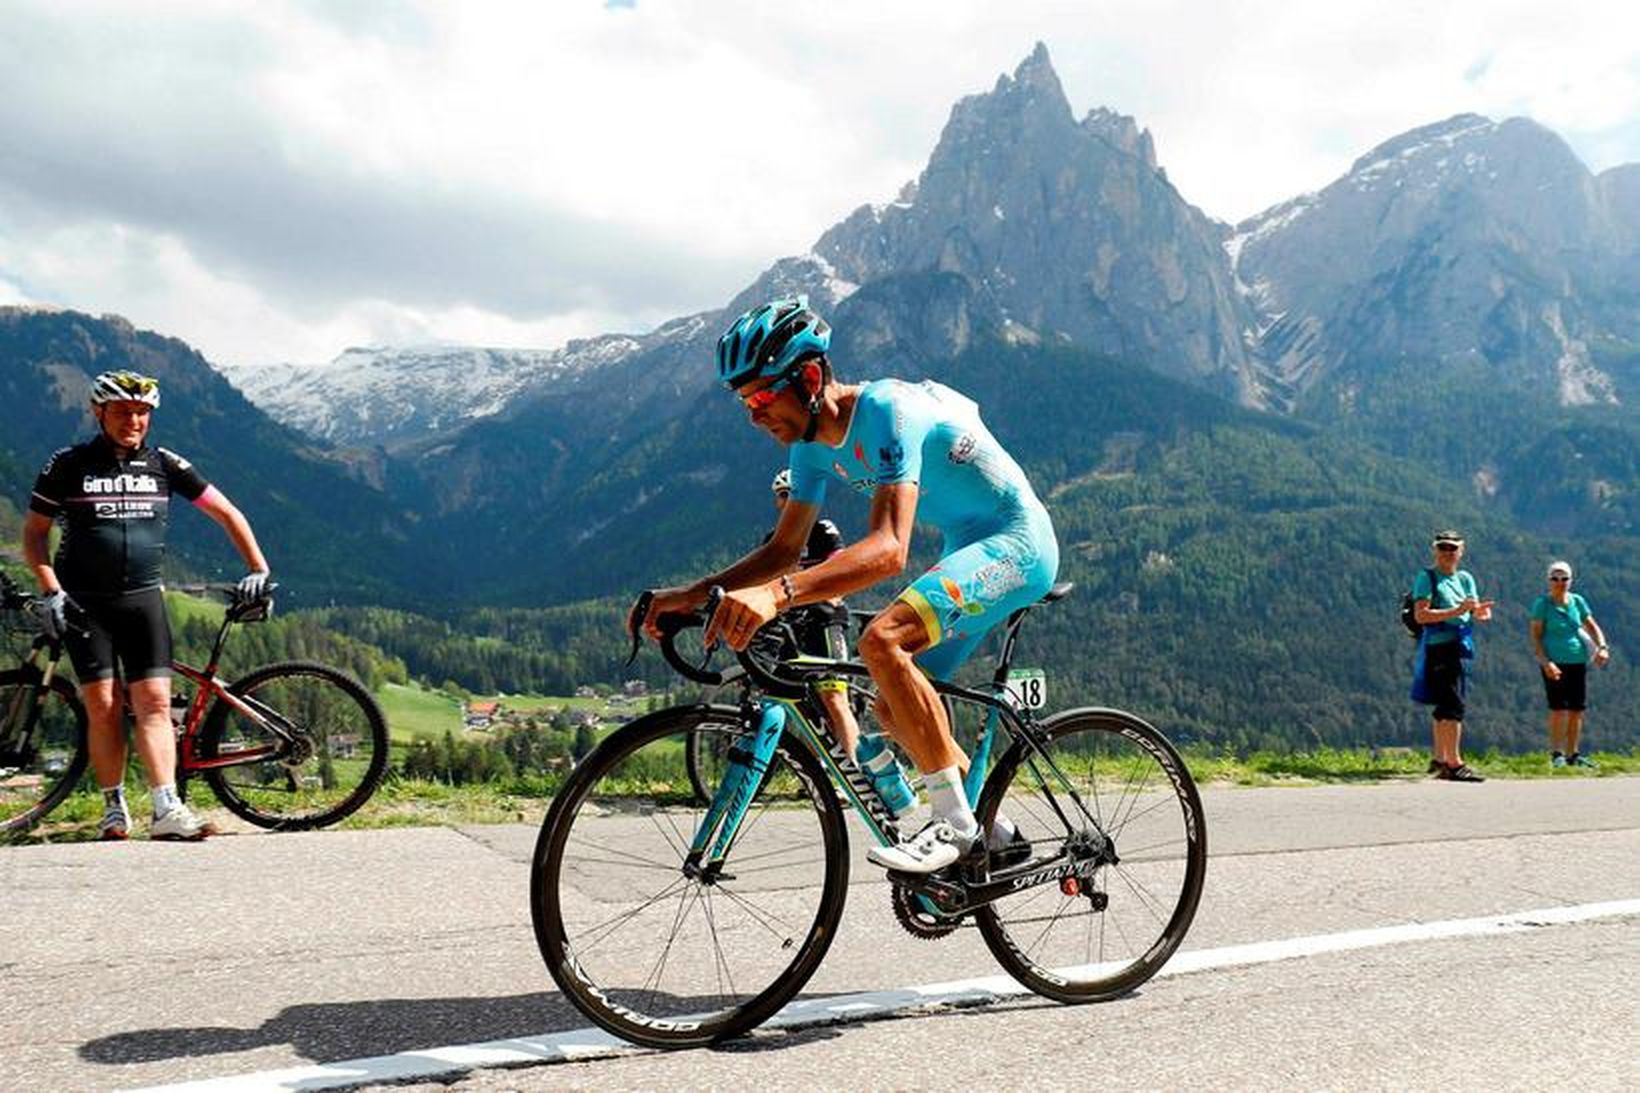 Hjólreiðamaðurinn Michele Scarponi í Giro d'Italia í maí í fyrra.